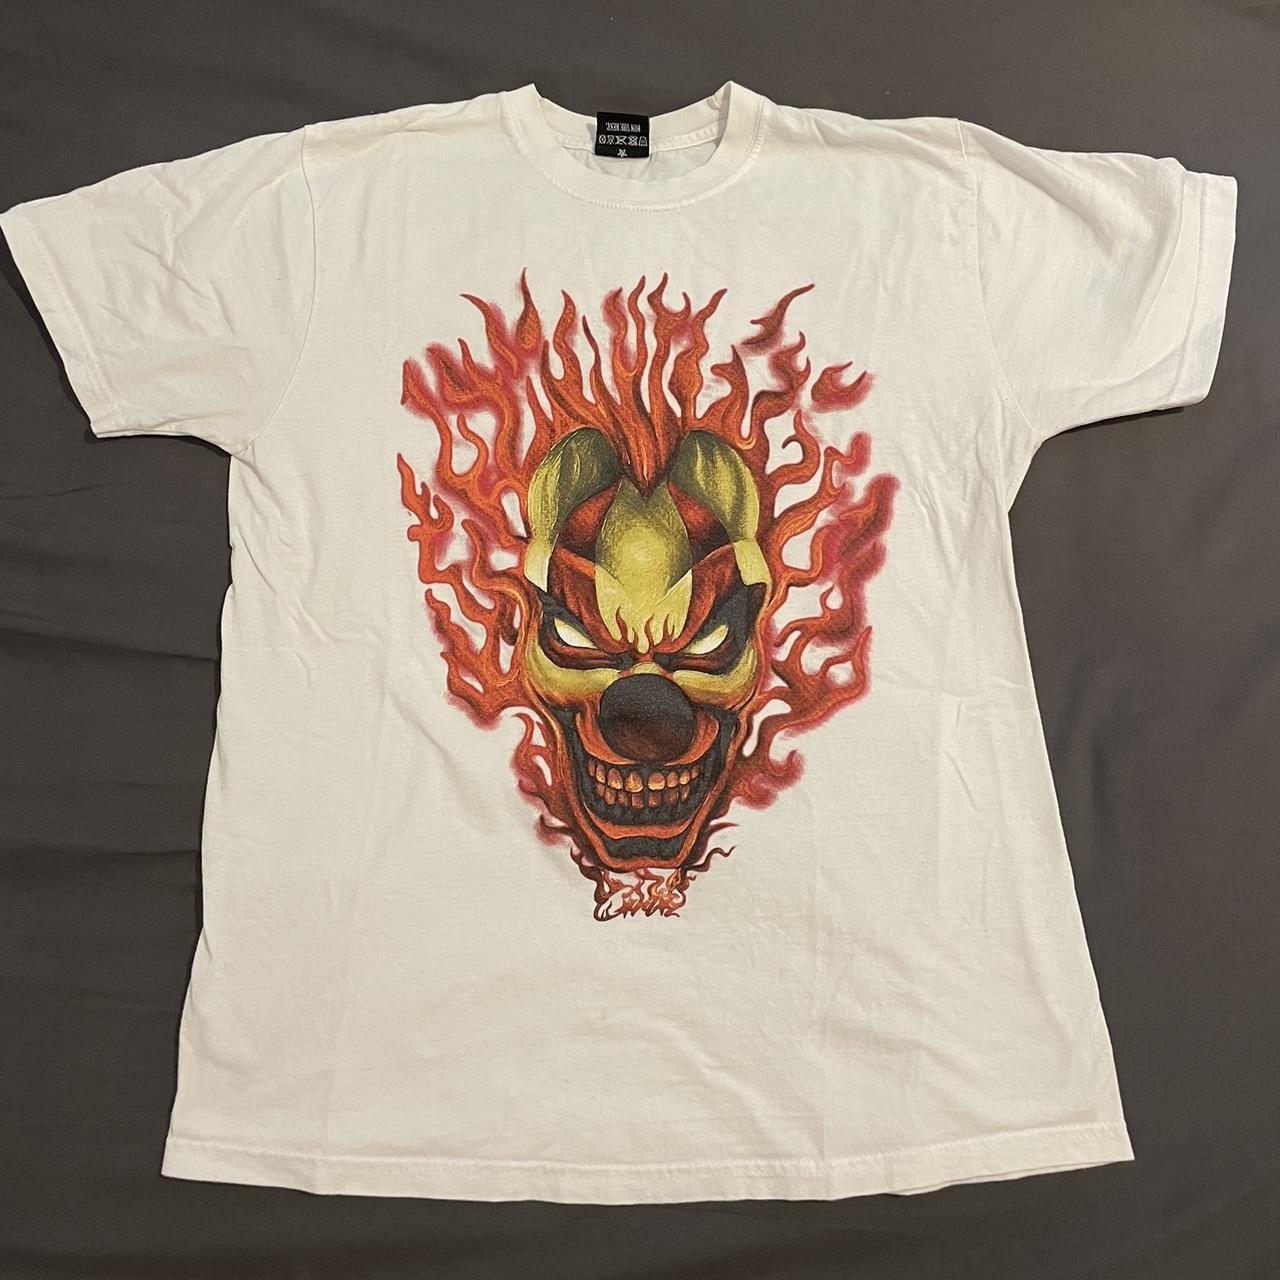 Corteiz Men's Red and White T-shirt | Depop